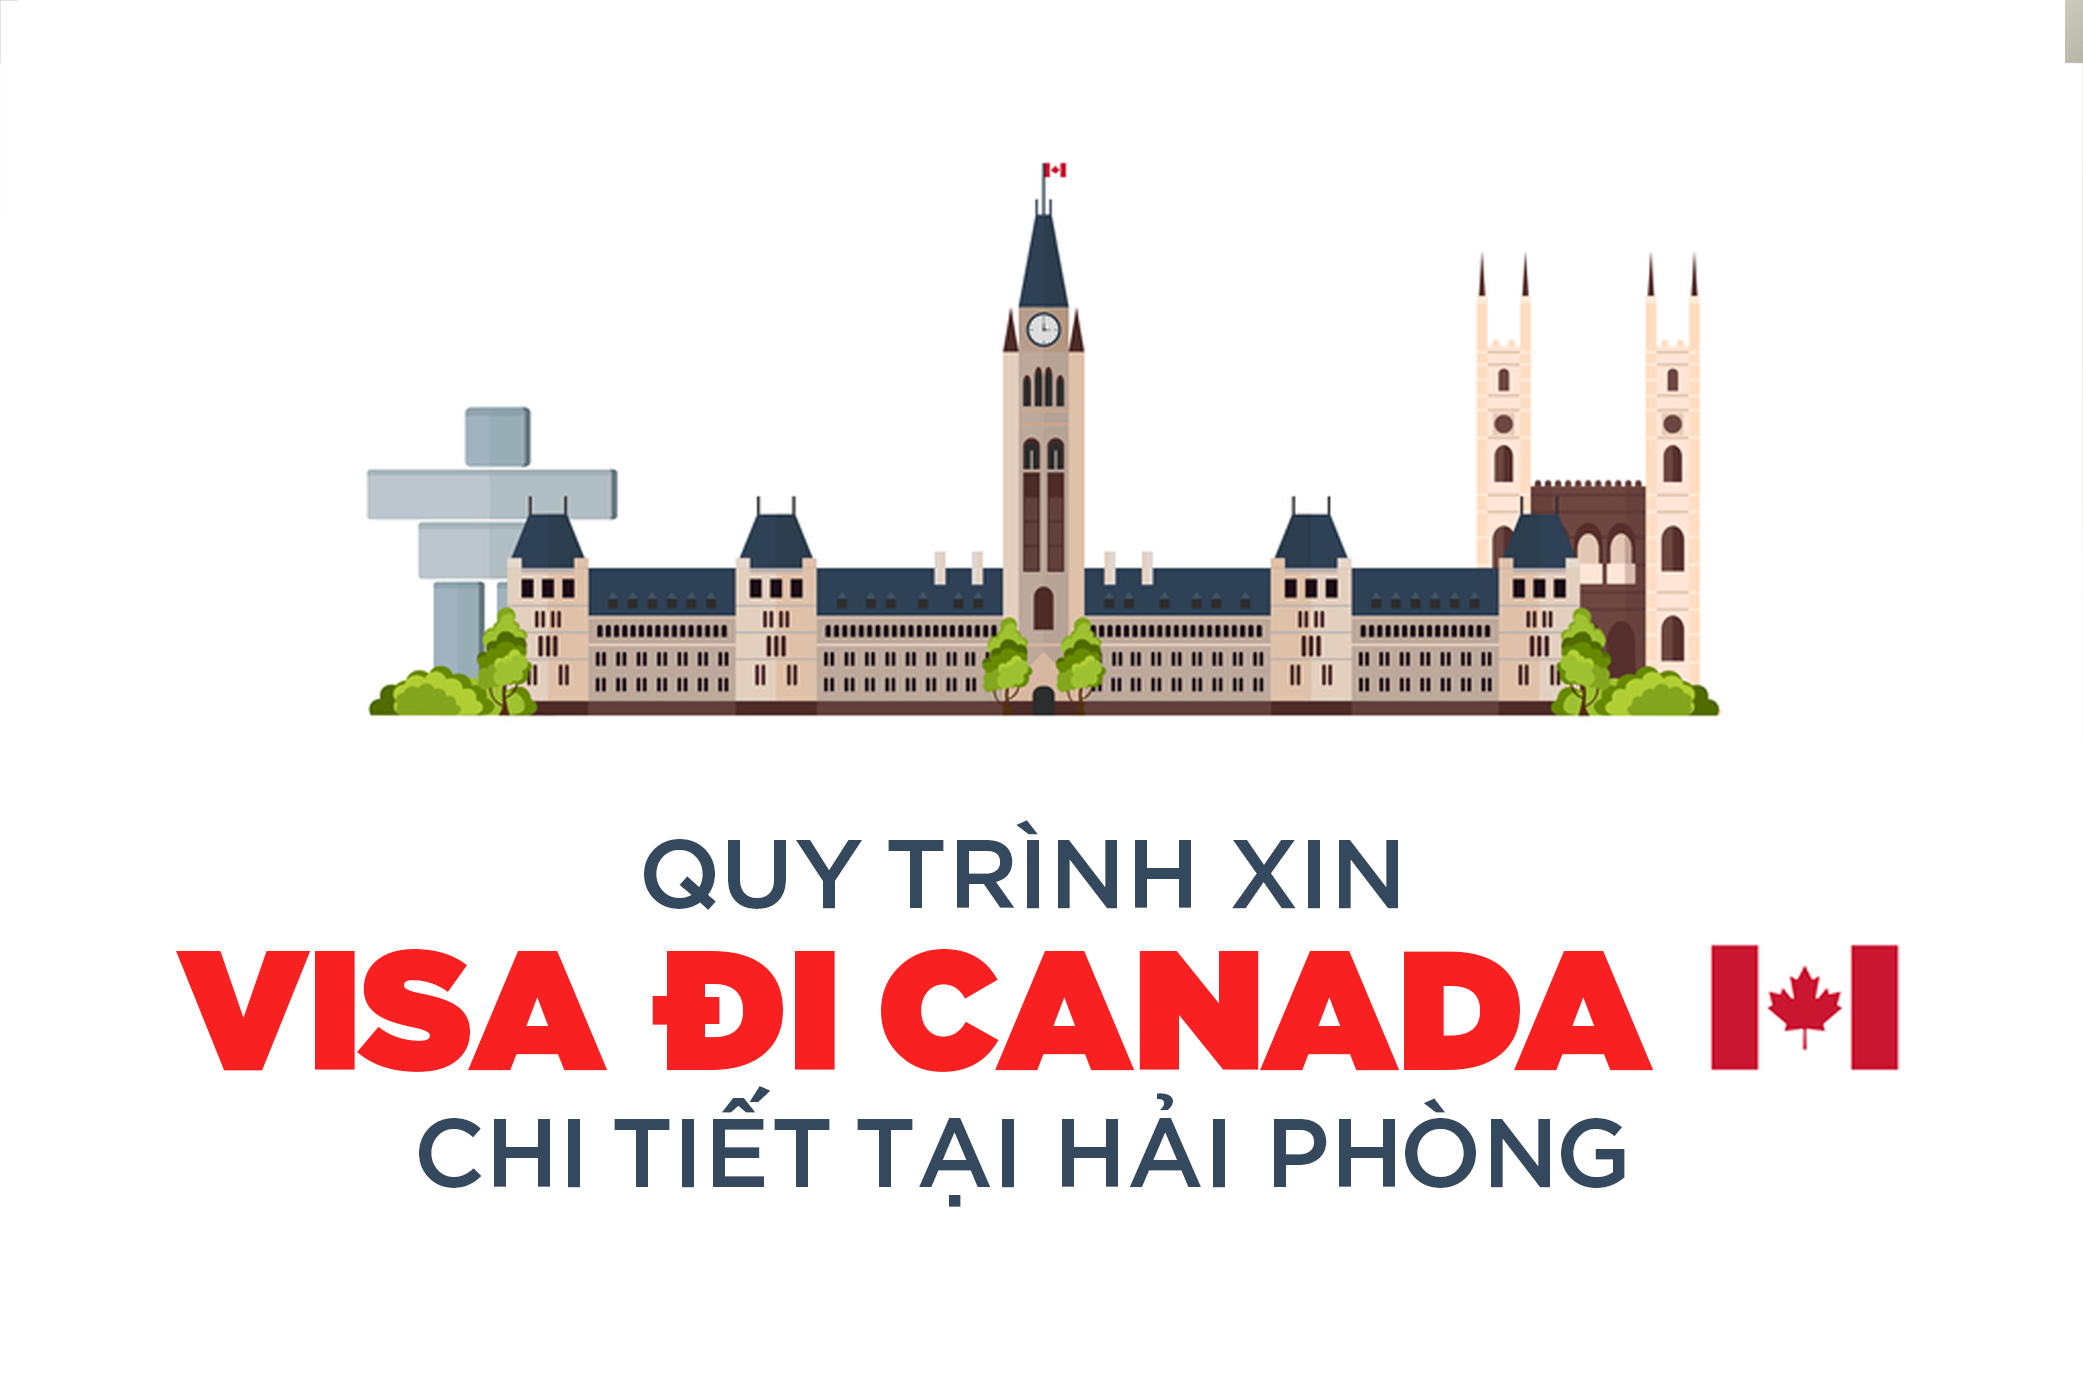 Quy trình xin visa Canada chi tiết tại Hải Phòng